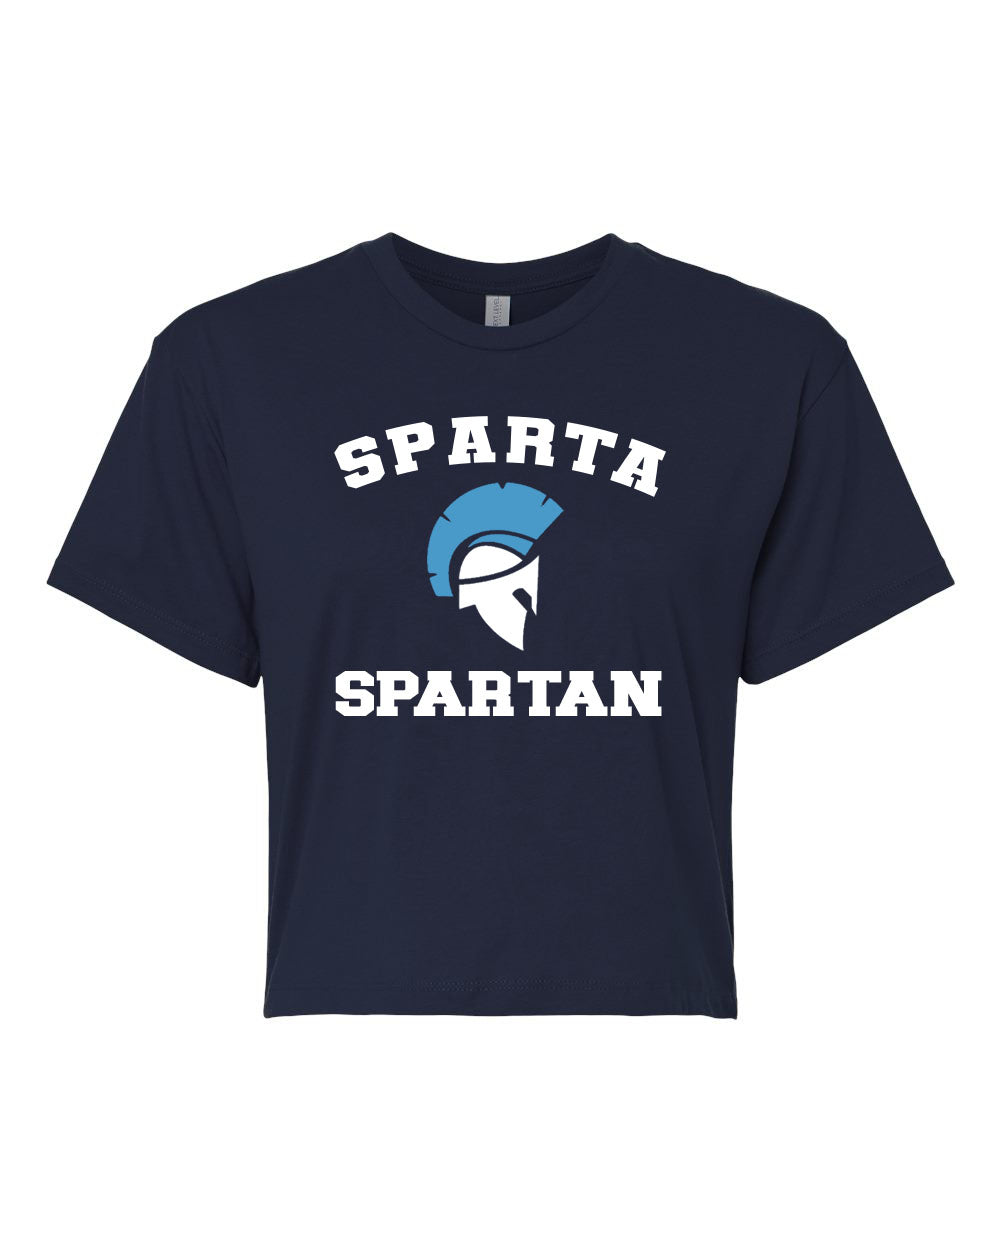 Sparta School Design 1 Crop Top